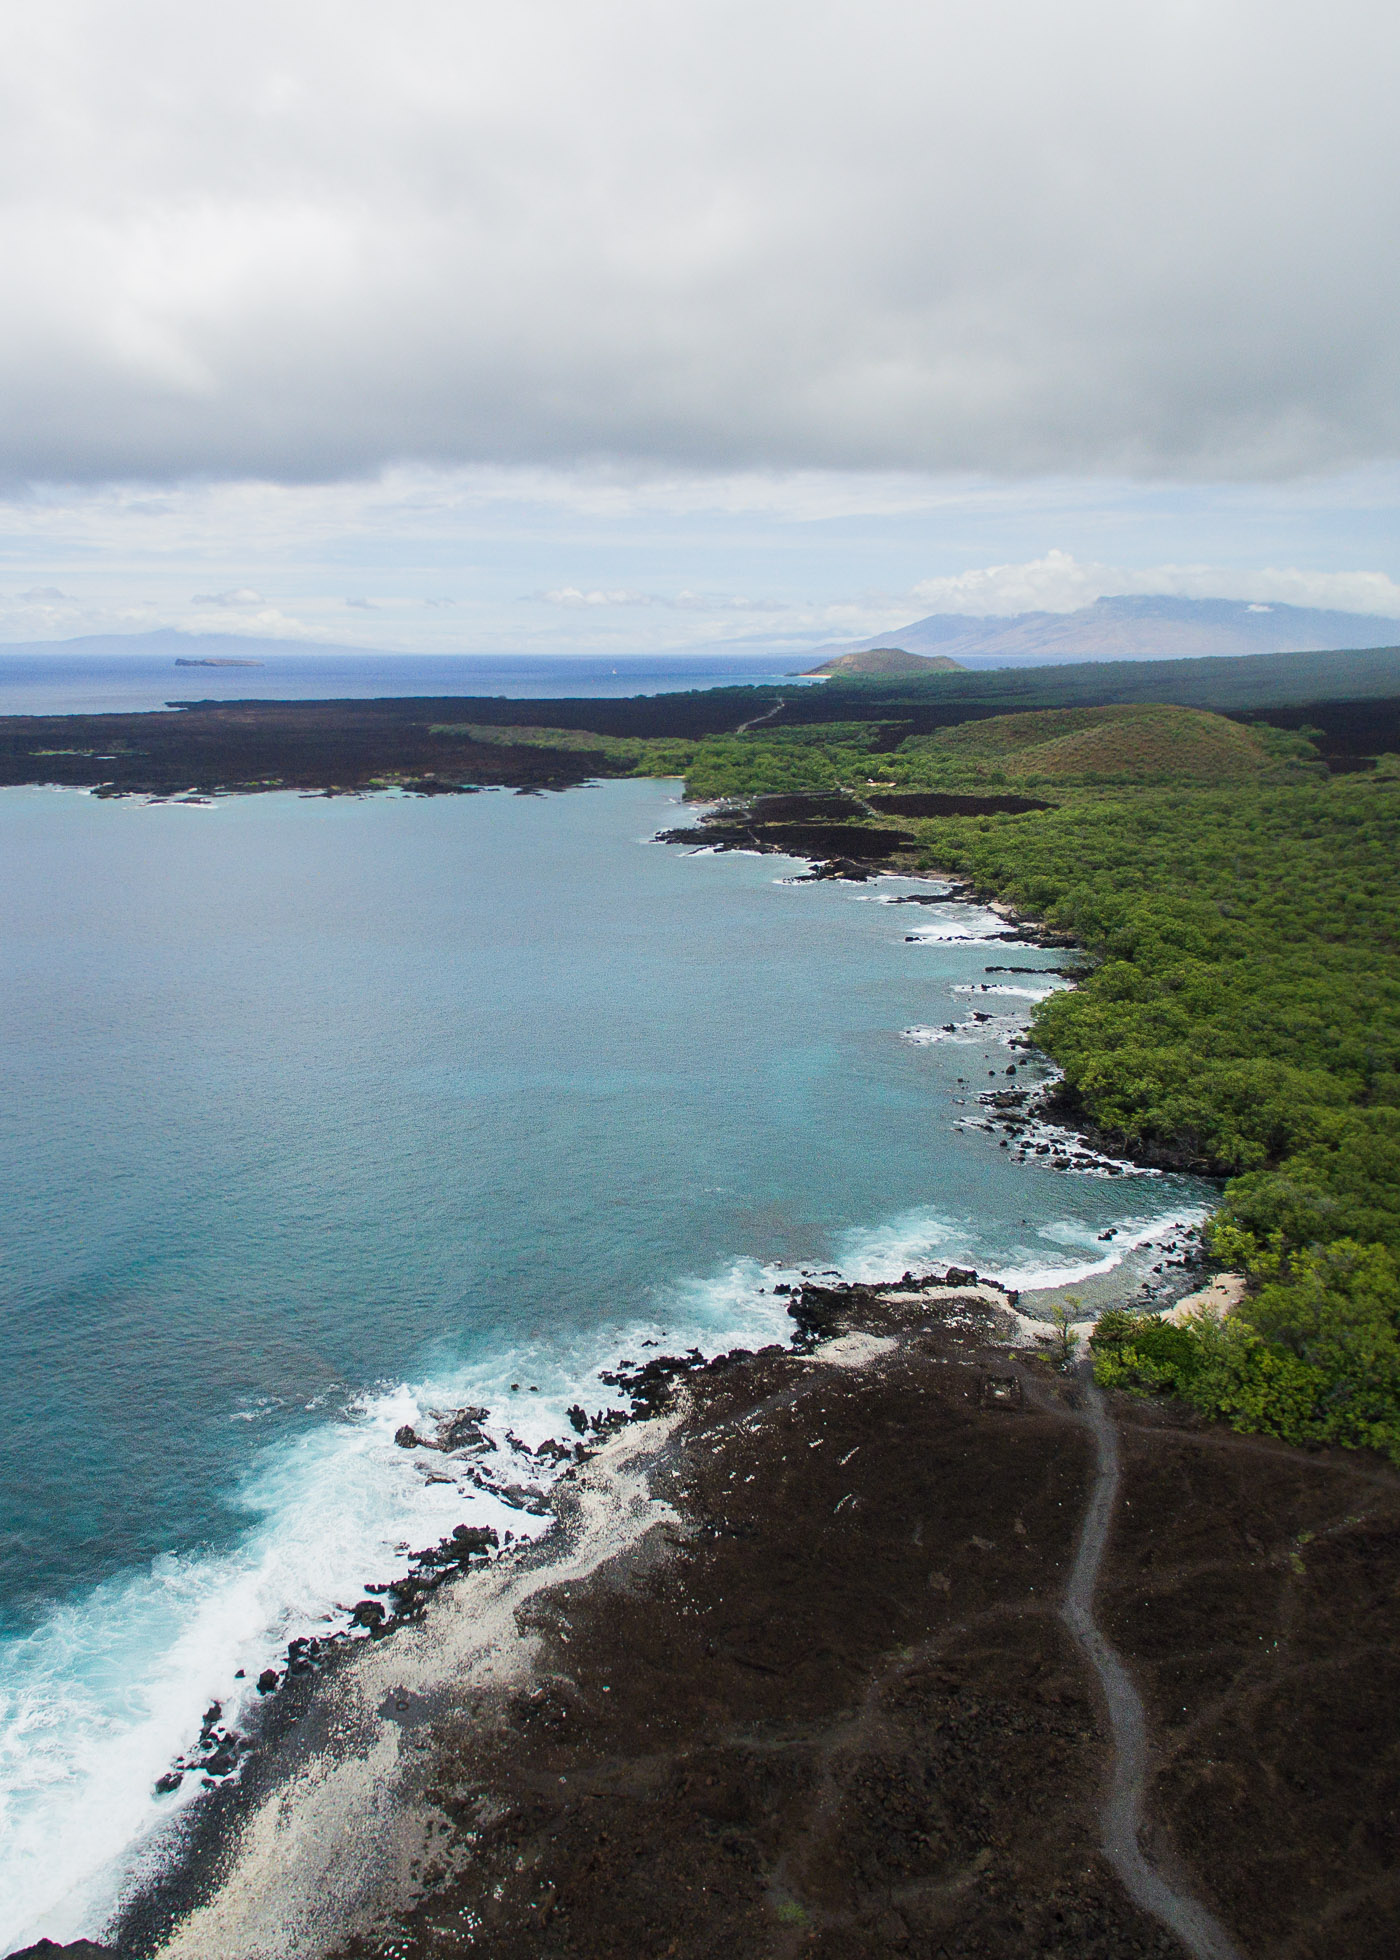 Le Perouse Bay on the island of Maui